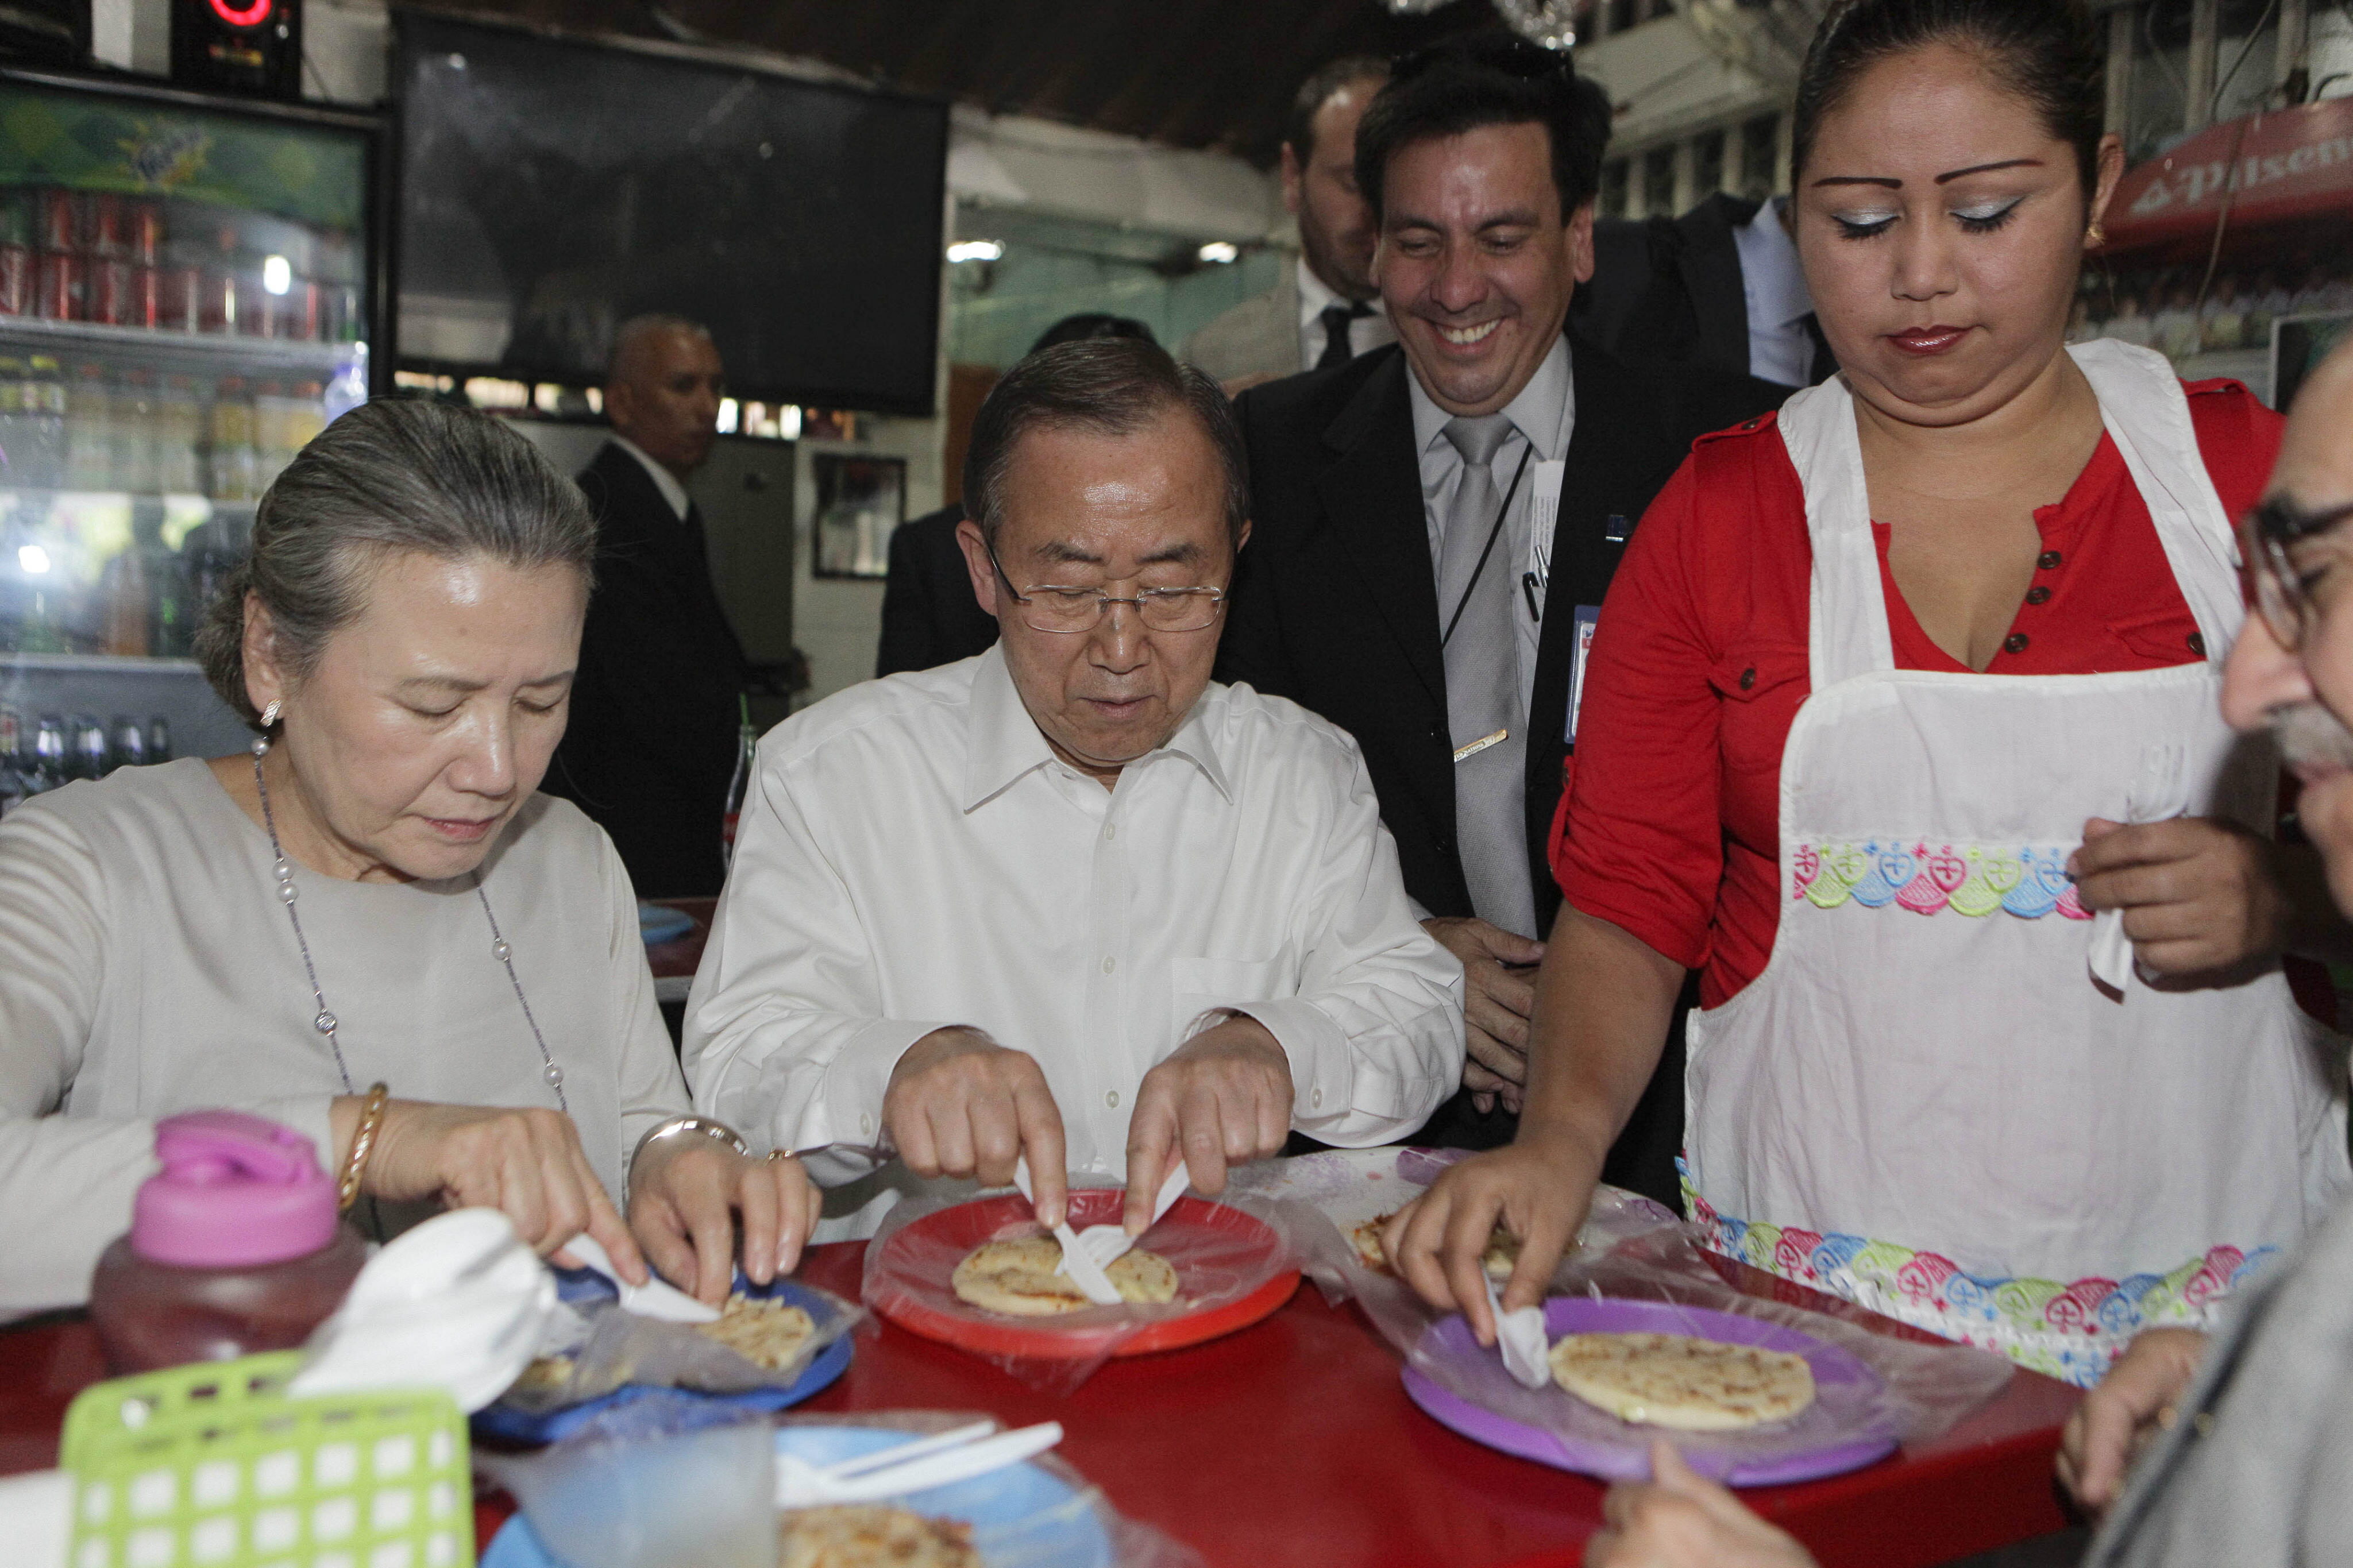 Secretario general de la ONU se despide de El Salvador comiendo “pupusa loca” (Fotos)